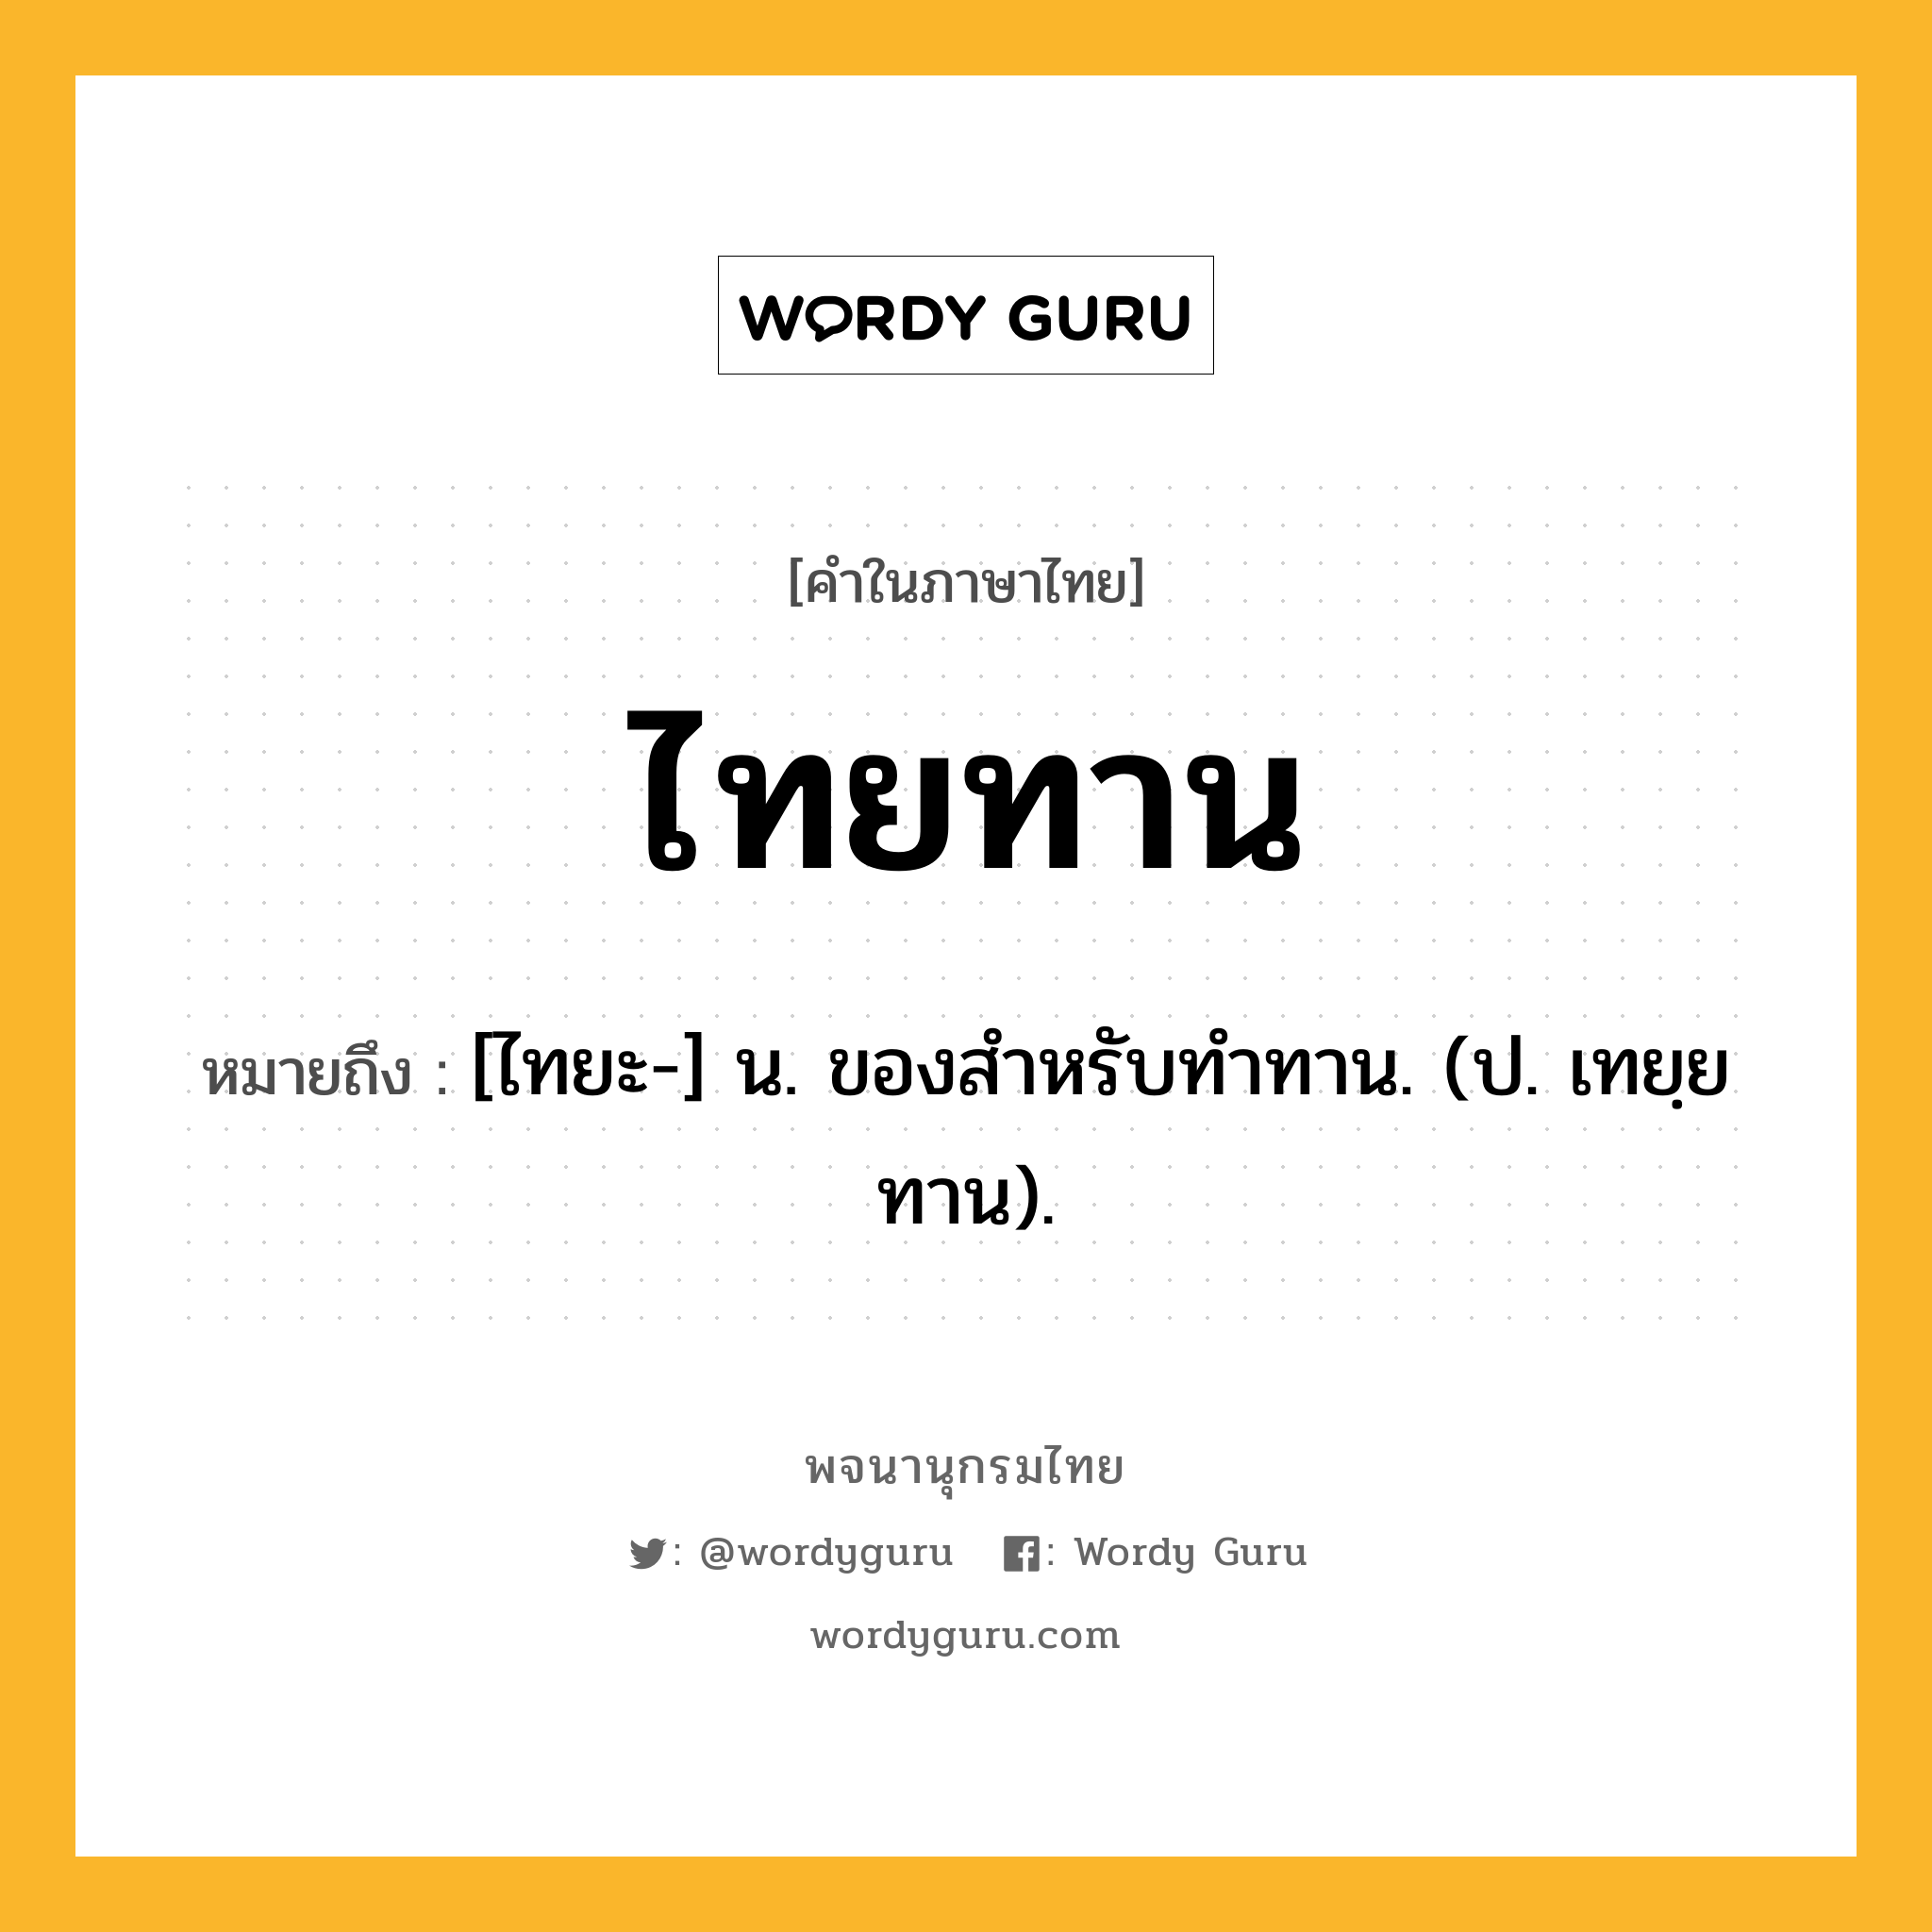 ไทยทาน หมายถึงอะไร?, คำในภาษาไทย ไทยทาน หมายถึง [ไทยะ-] น. ของสําหรับทําทาน. (ป. เทยฺยทาน).